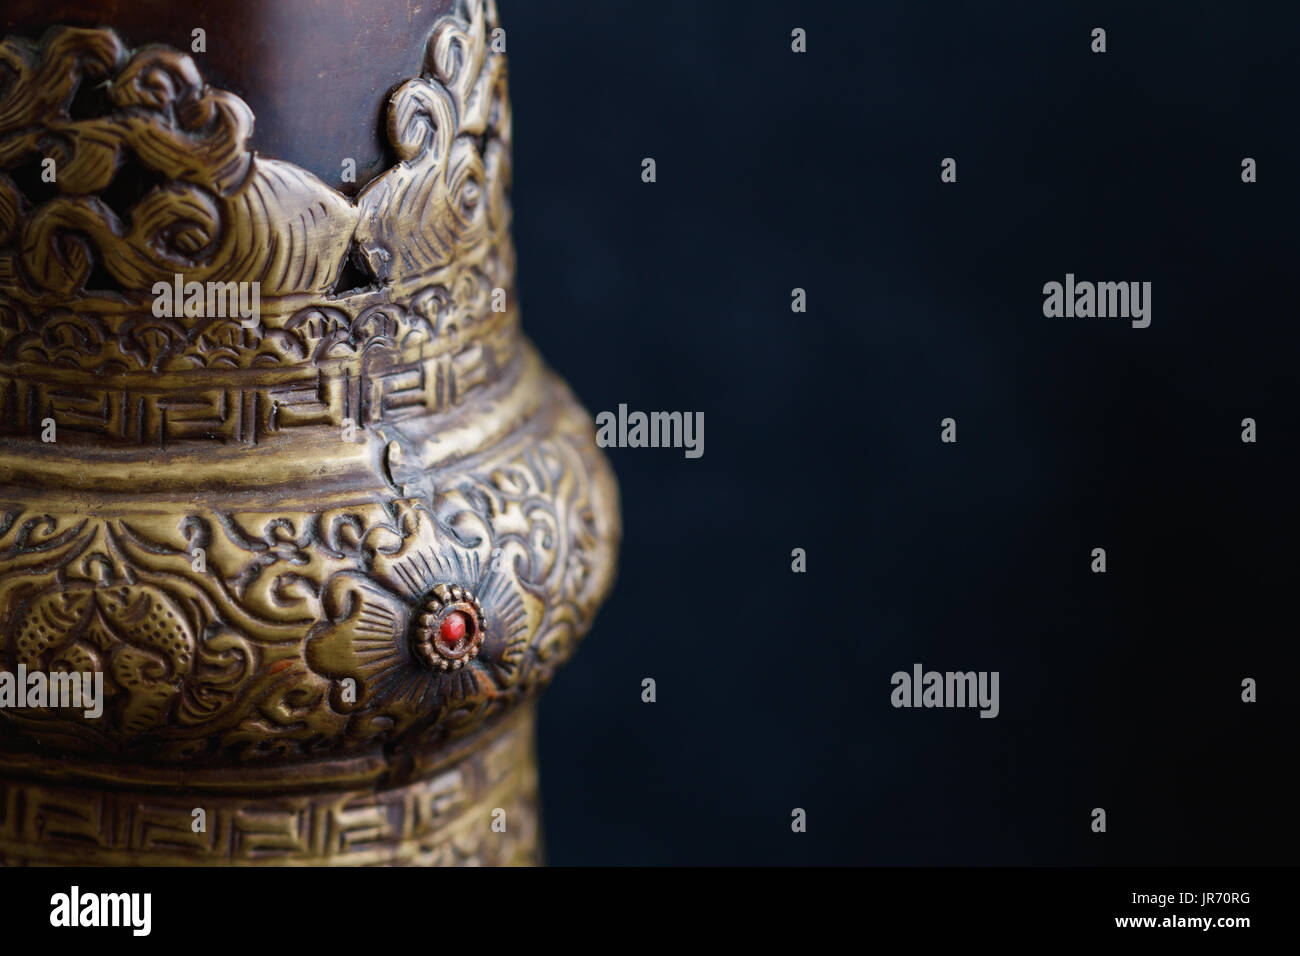 Close-up de l'ornement d'une vieille trompette tibétaine. Instrument de musique religieuse du bouddhisme tibétain. Banque D'Images